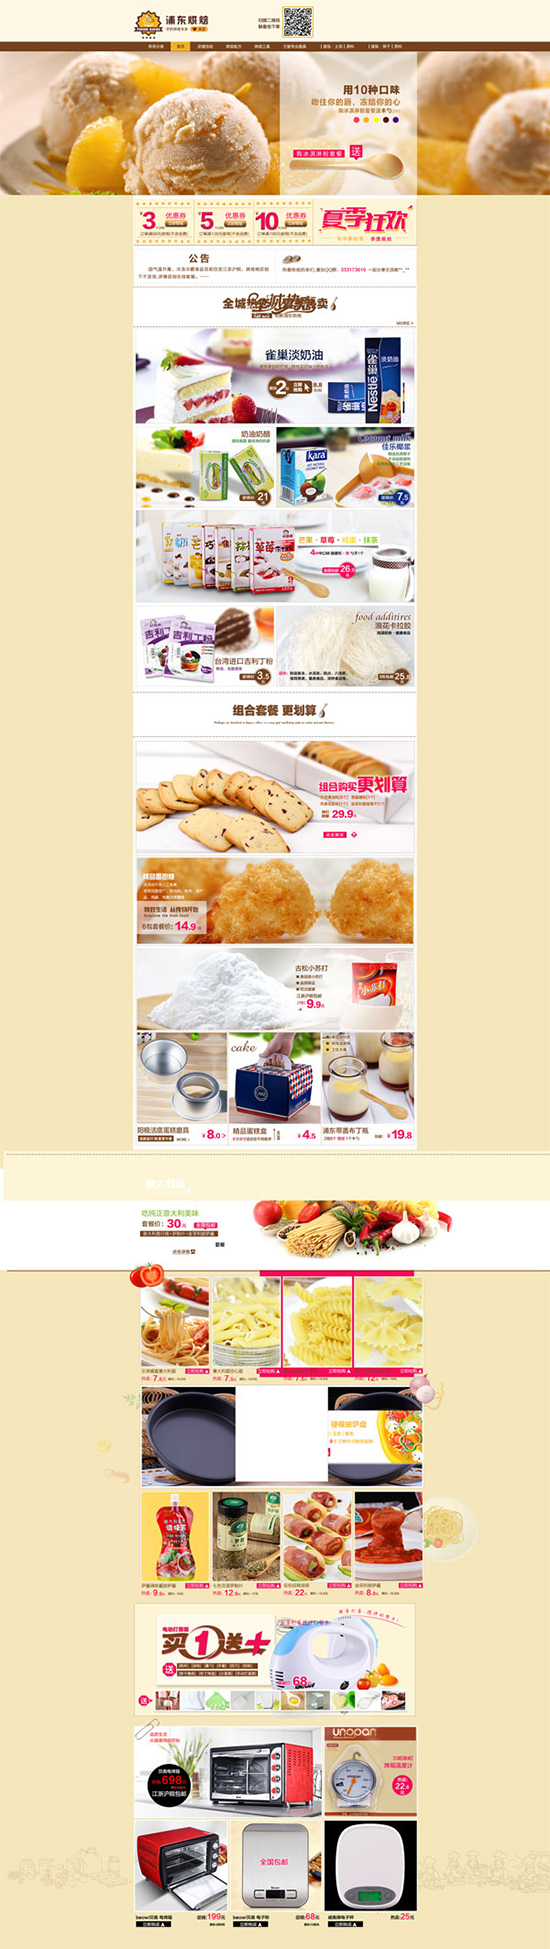 بودونغ الخبز قالب psd الصفحة الرئيسية الموقع